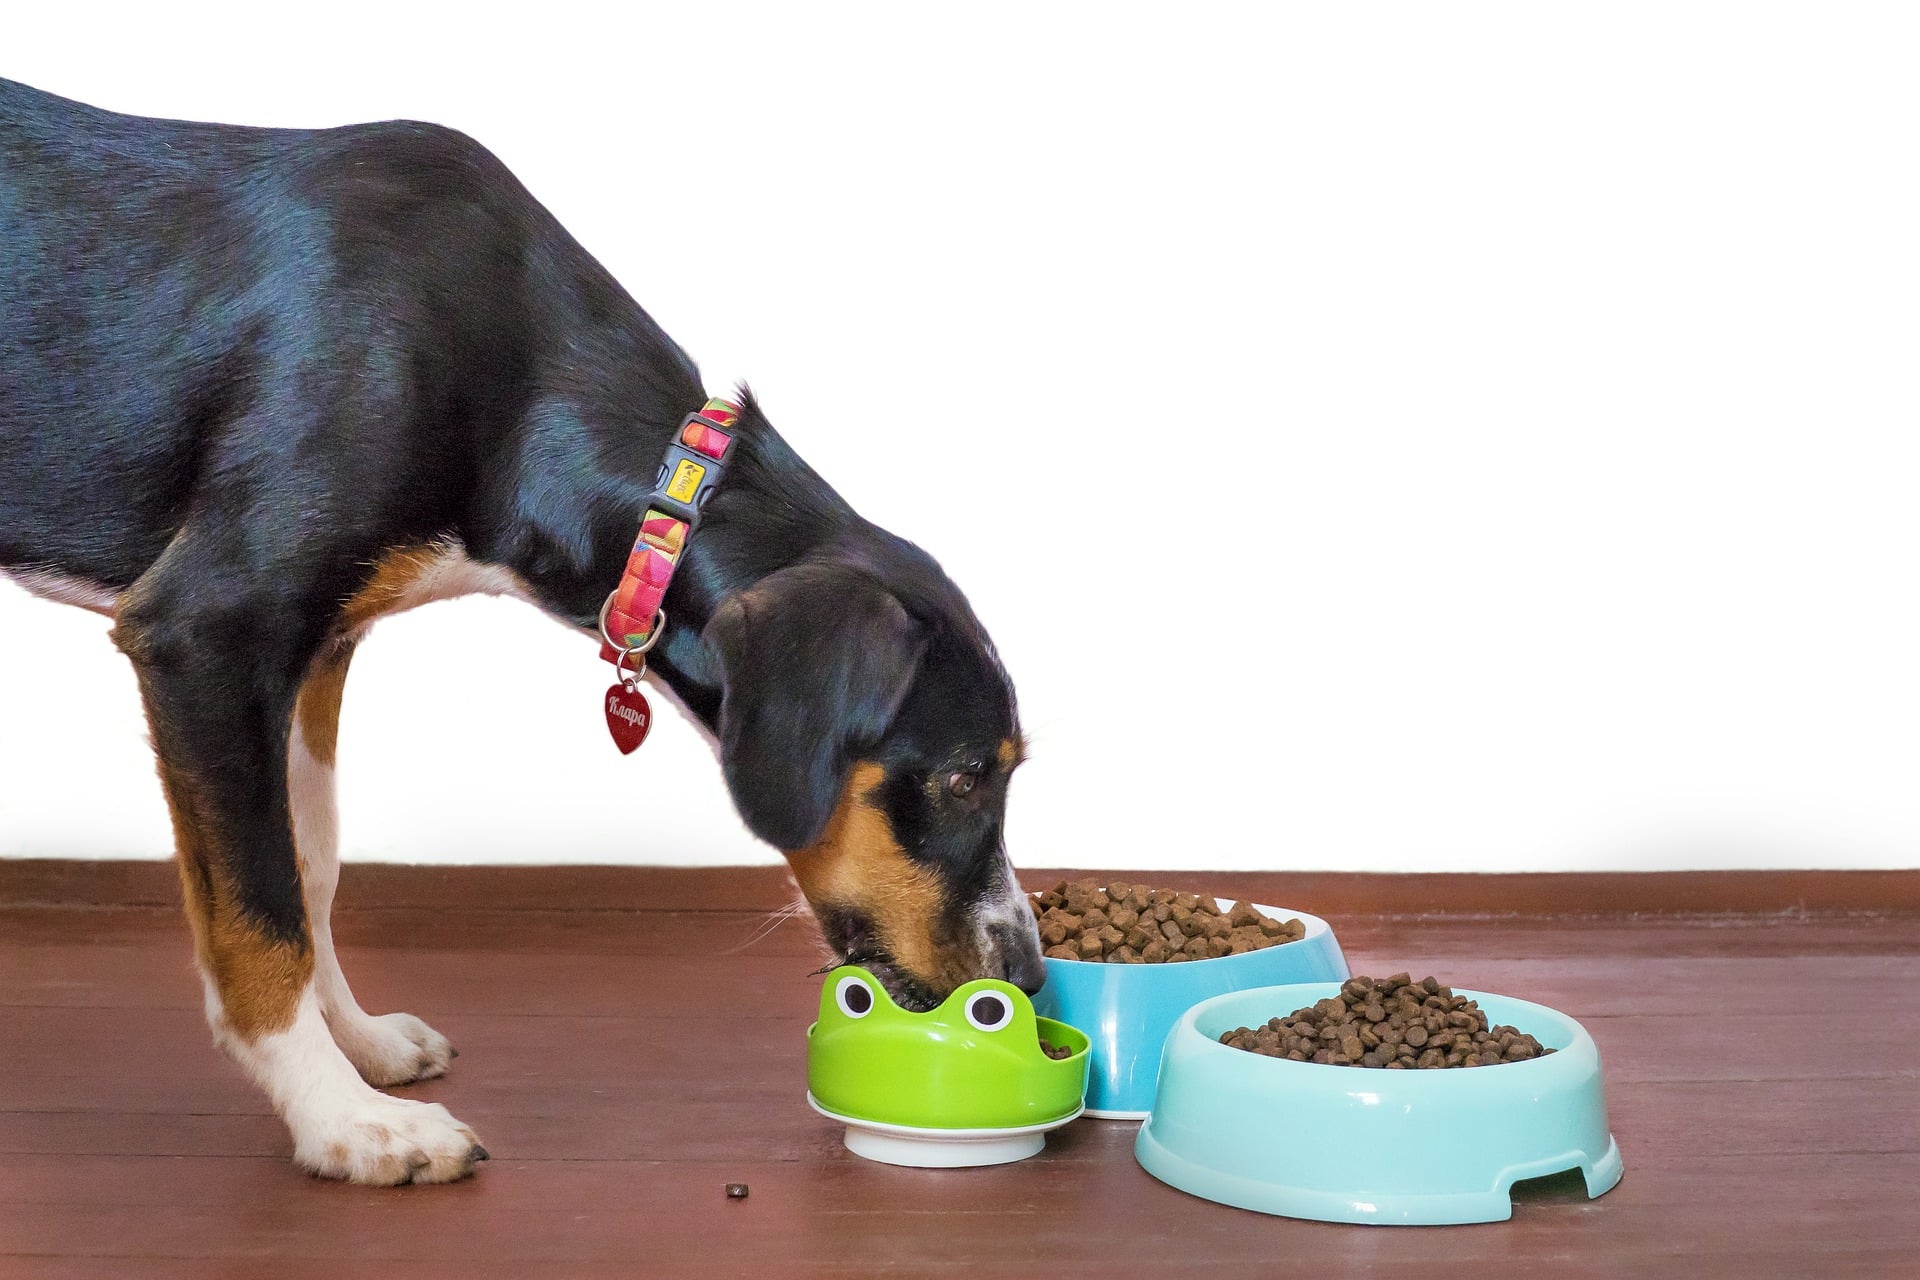 Rendere gustose le crocchette per cani, è l’ideale per farli mangiare sempre con appetito